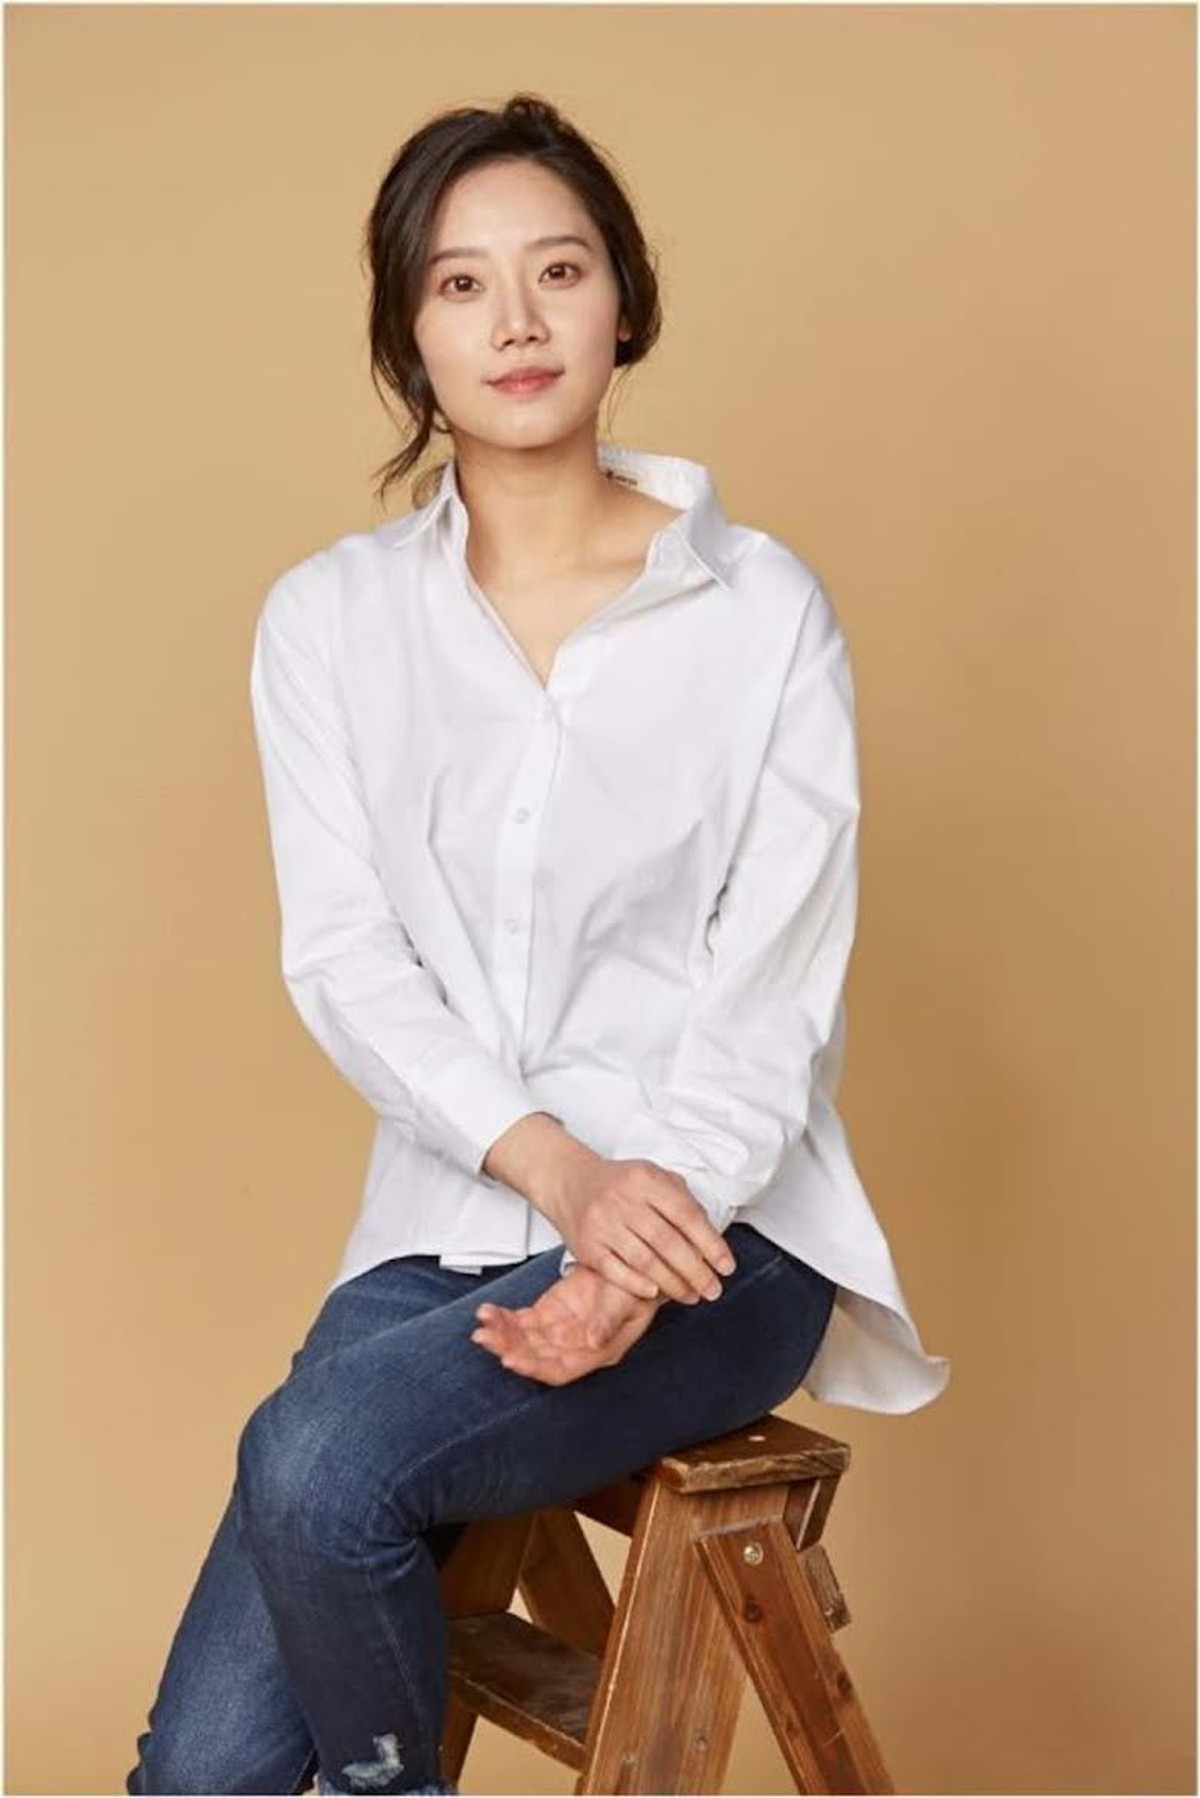 Kim Mi-soo, atriz coreana de ‘Snowdrop’ e ‘Profecia do inferno’, morre aos 29 anos | Pop & Arte